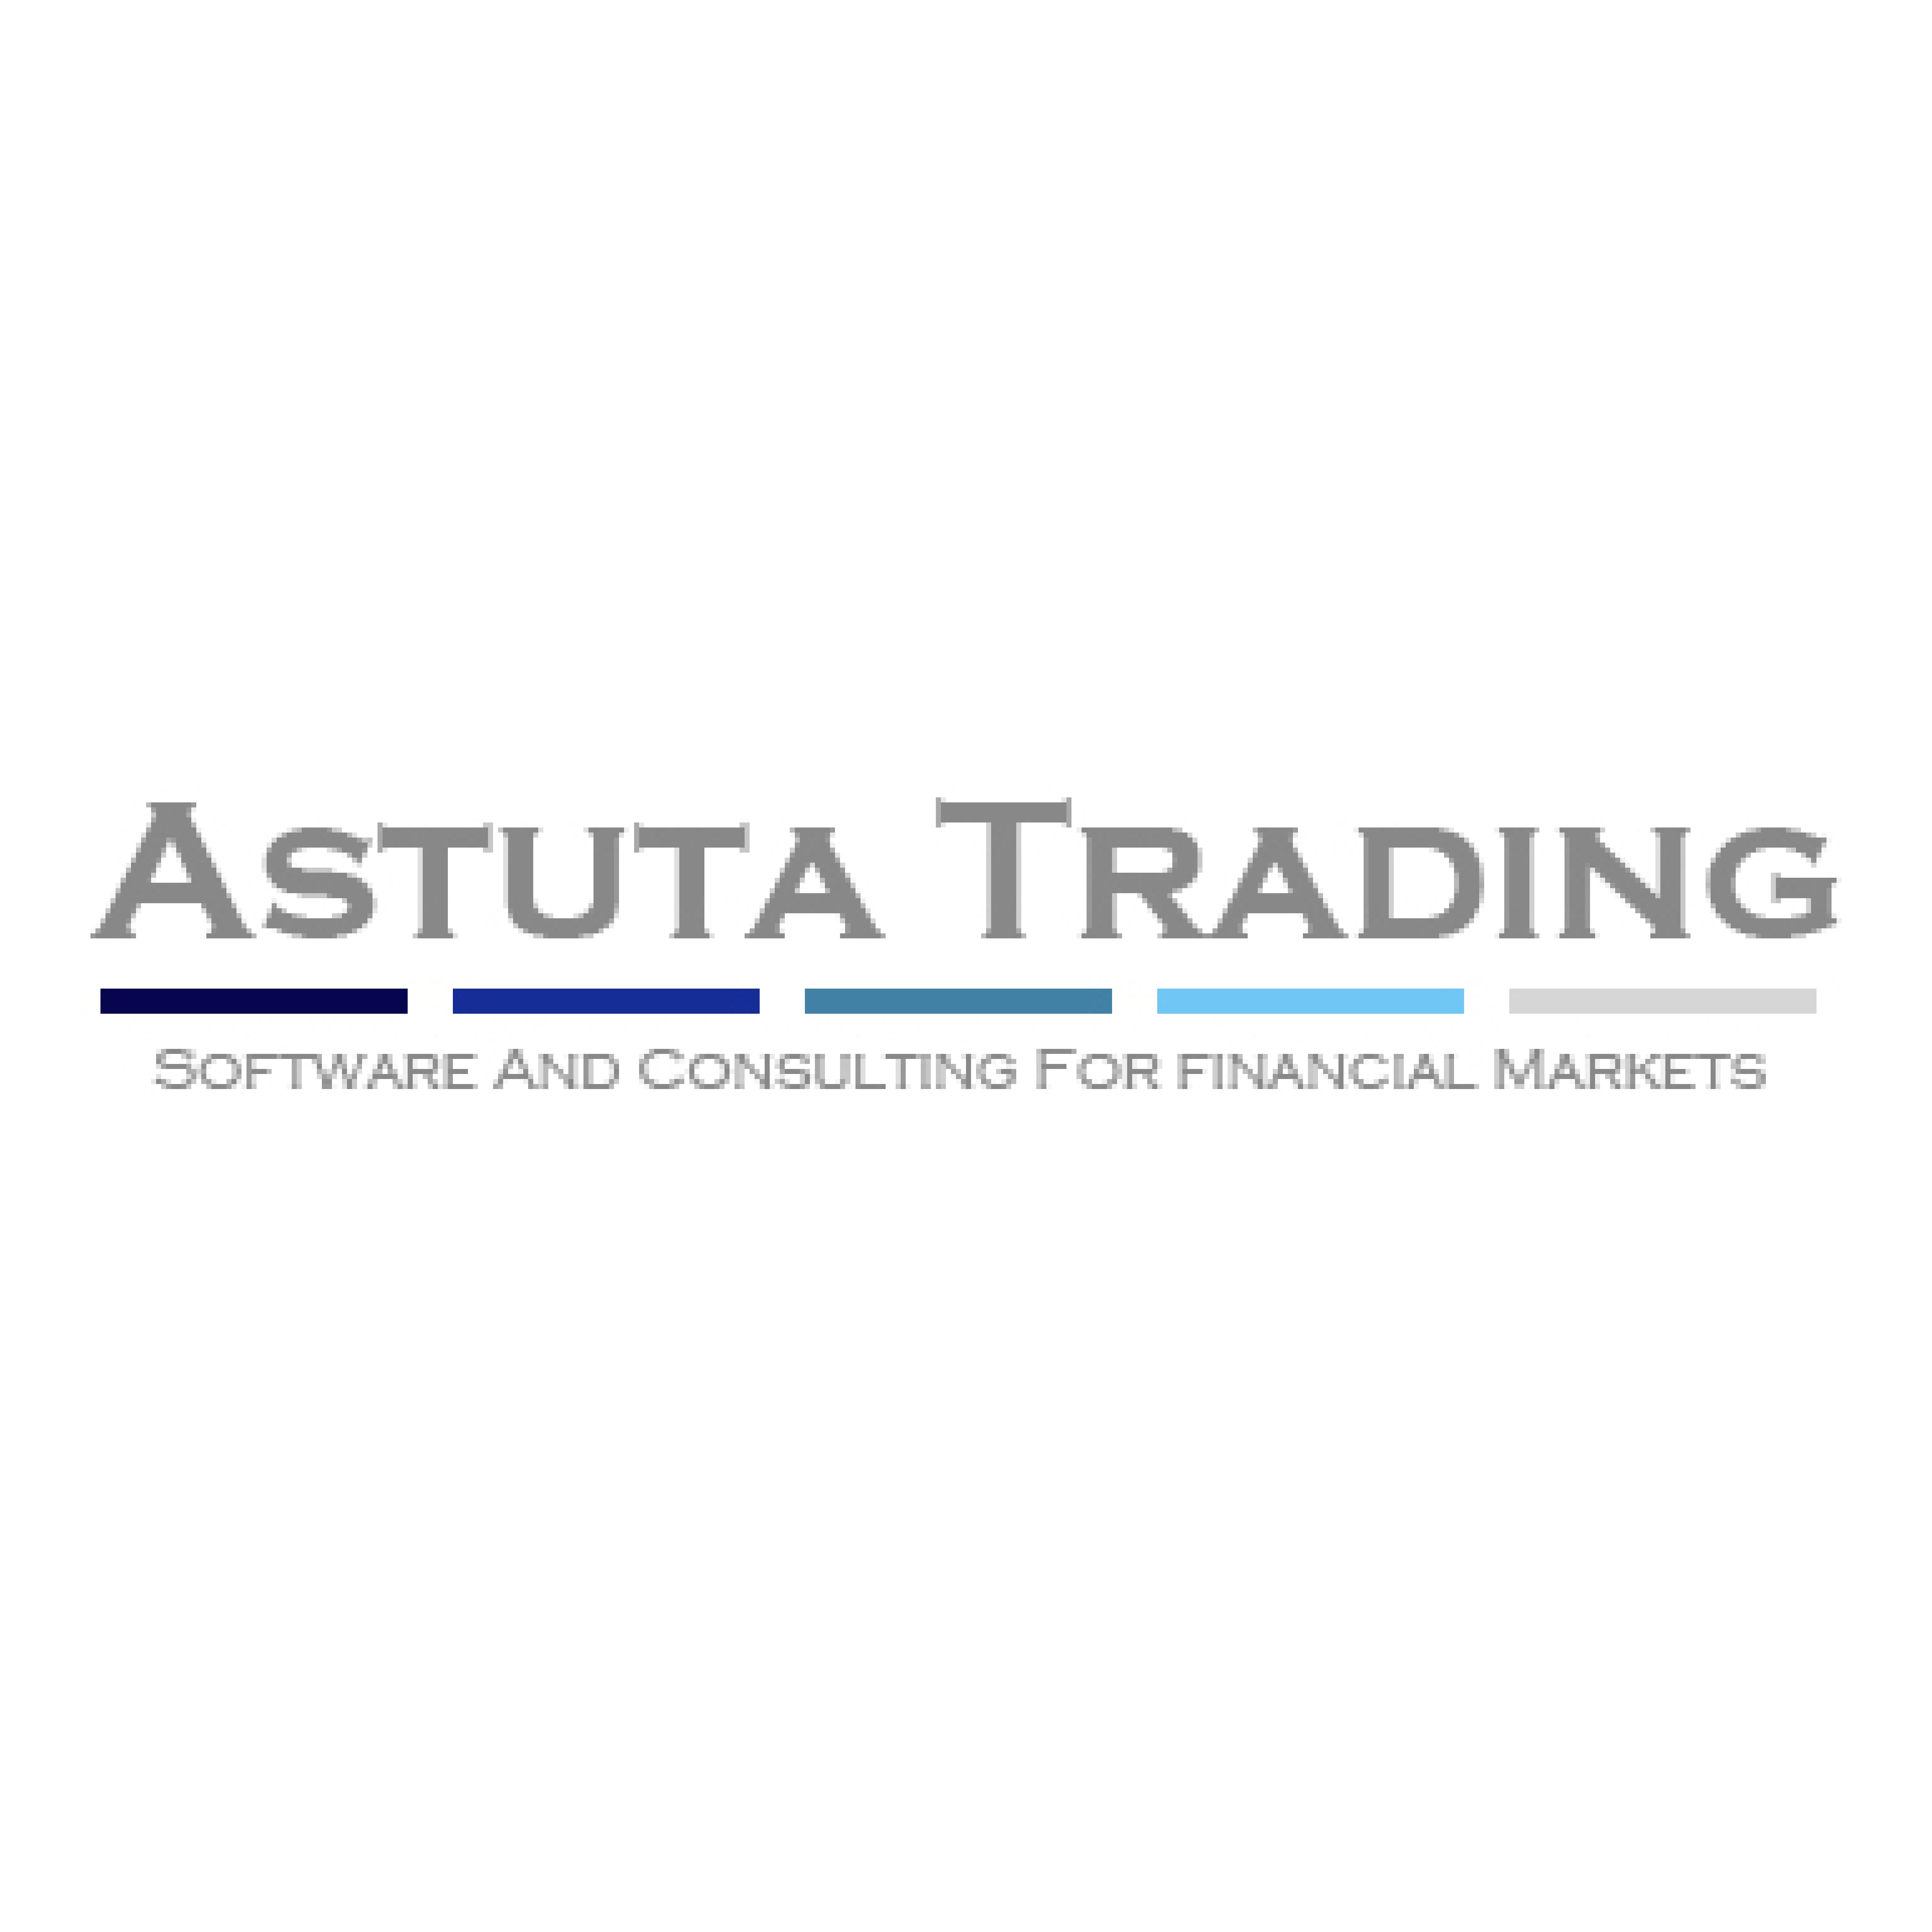 Astuta Trading (Pty) Ltd